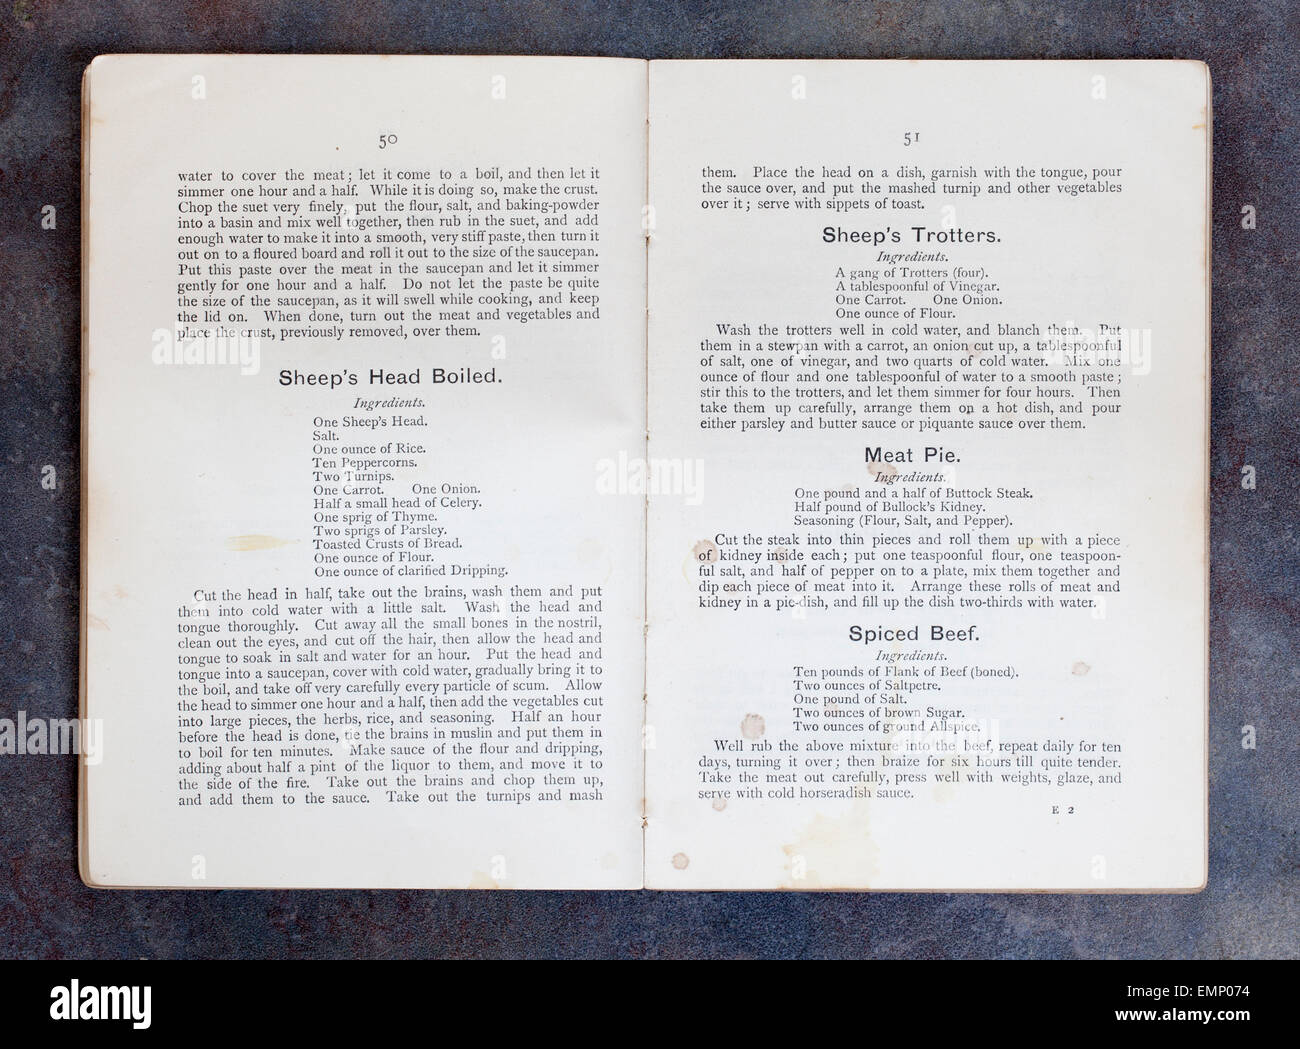 Einfach Kochen Rezepte - das offizielle Handbuch der National Training School der Küche von Frau Charles Clarke Stockfoto